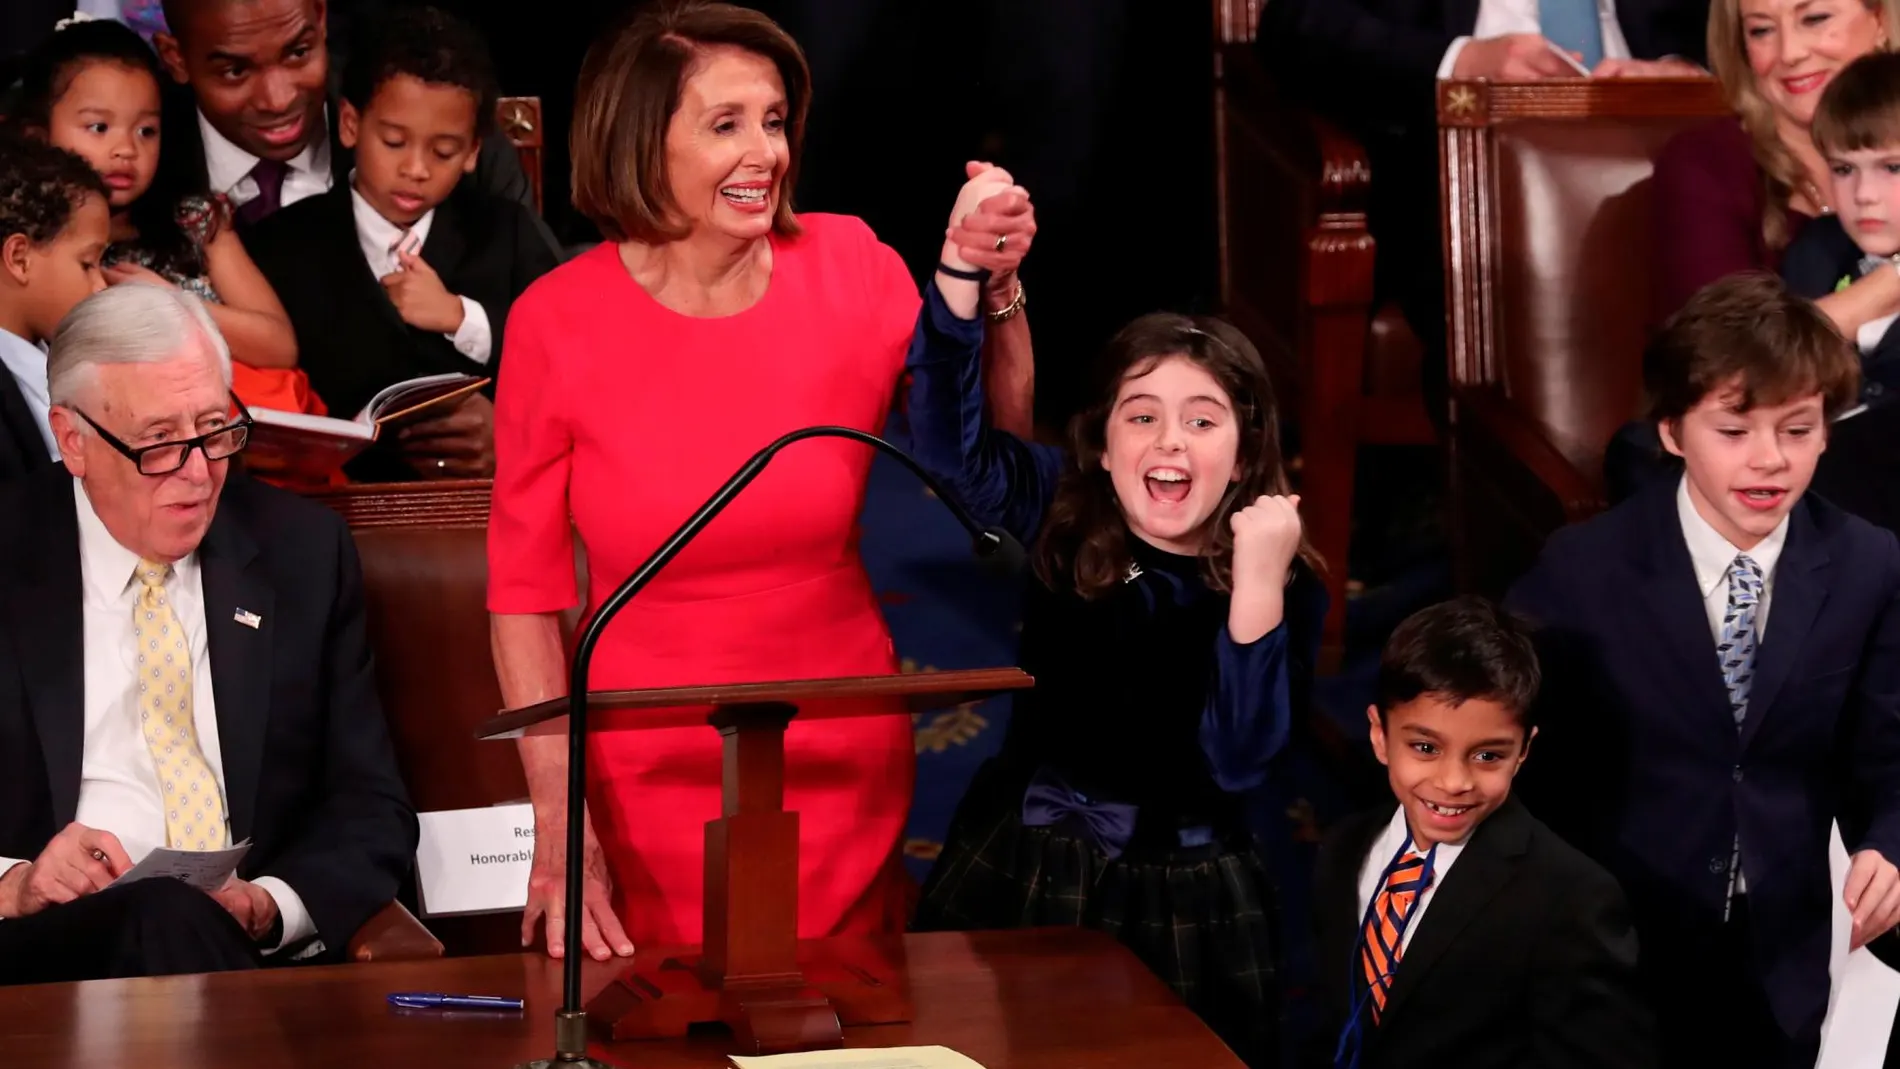 La líder demócrata Nancy Pelosi sonríe junto a una niña tras emitir su voto durante la ceremonia en la que toma posesión de su nuevo cargo como presidenta de la Cámara Baja de EE.UU / Reuters